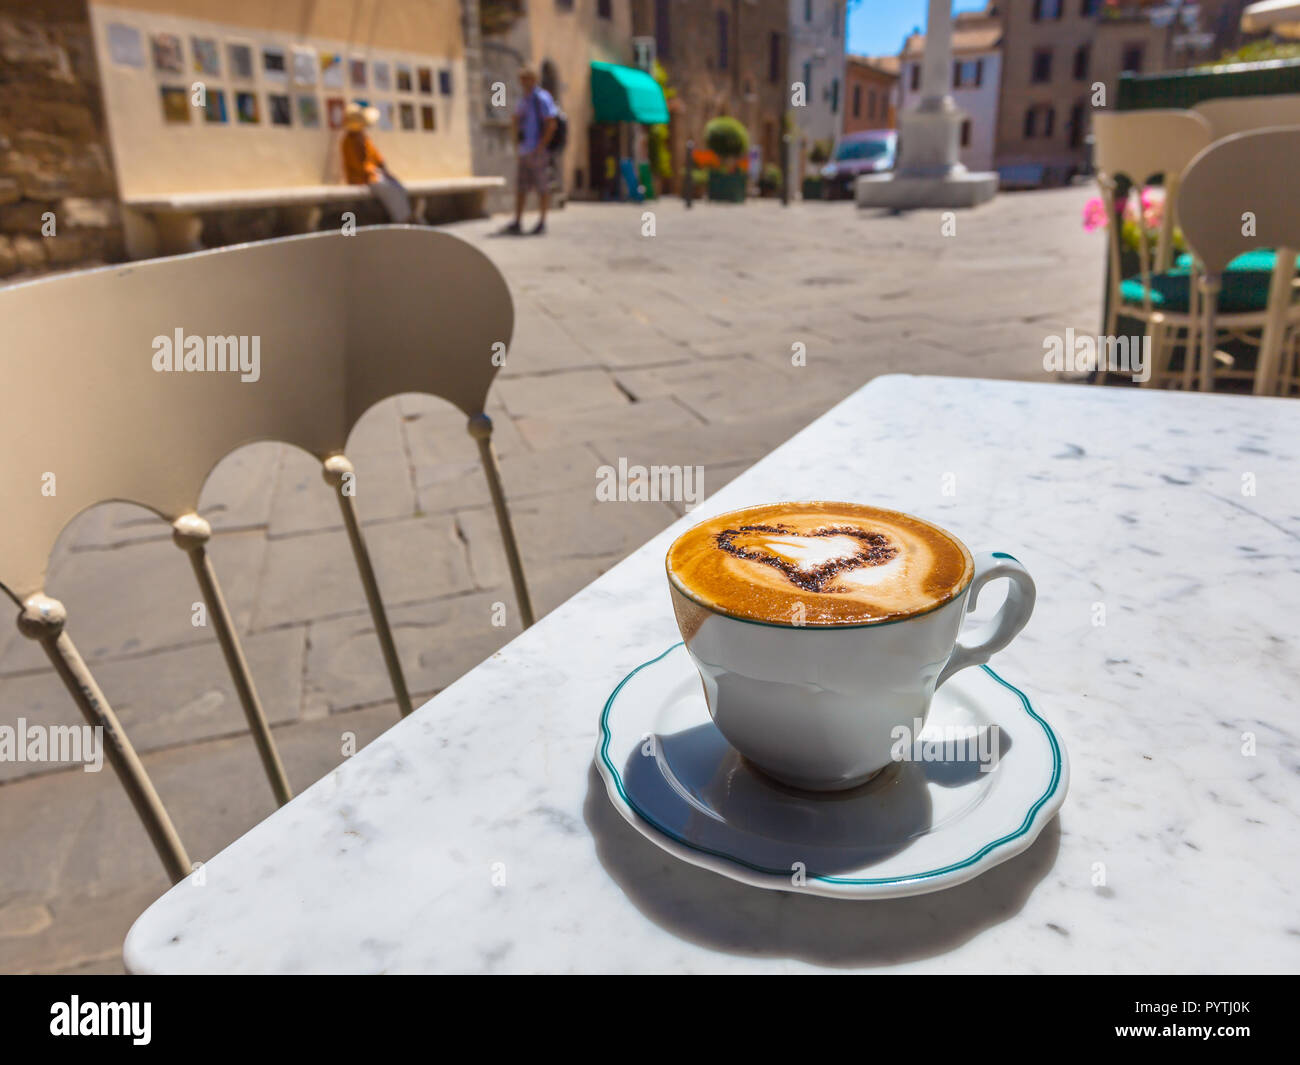 Italienische Tasse Cappuccino in einem Café, Terrasse mit Blick auf die  Straße, Italien Stockfotografie - Alamy